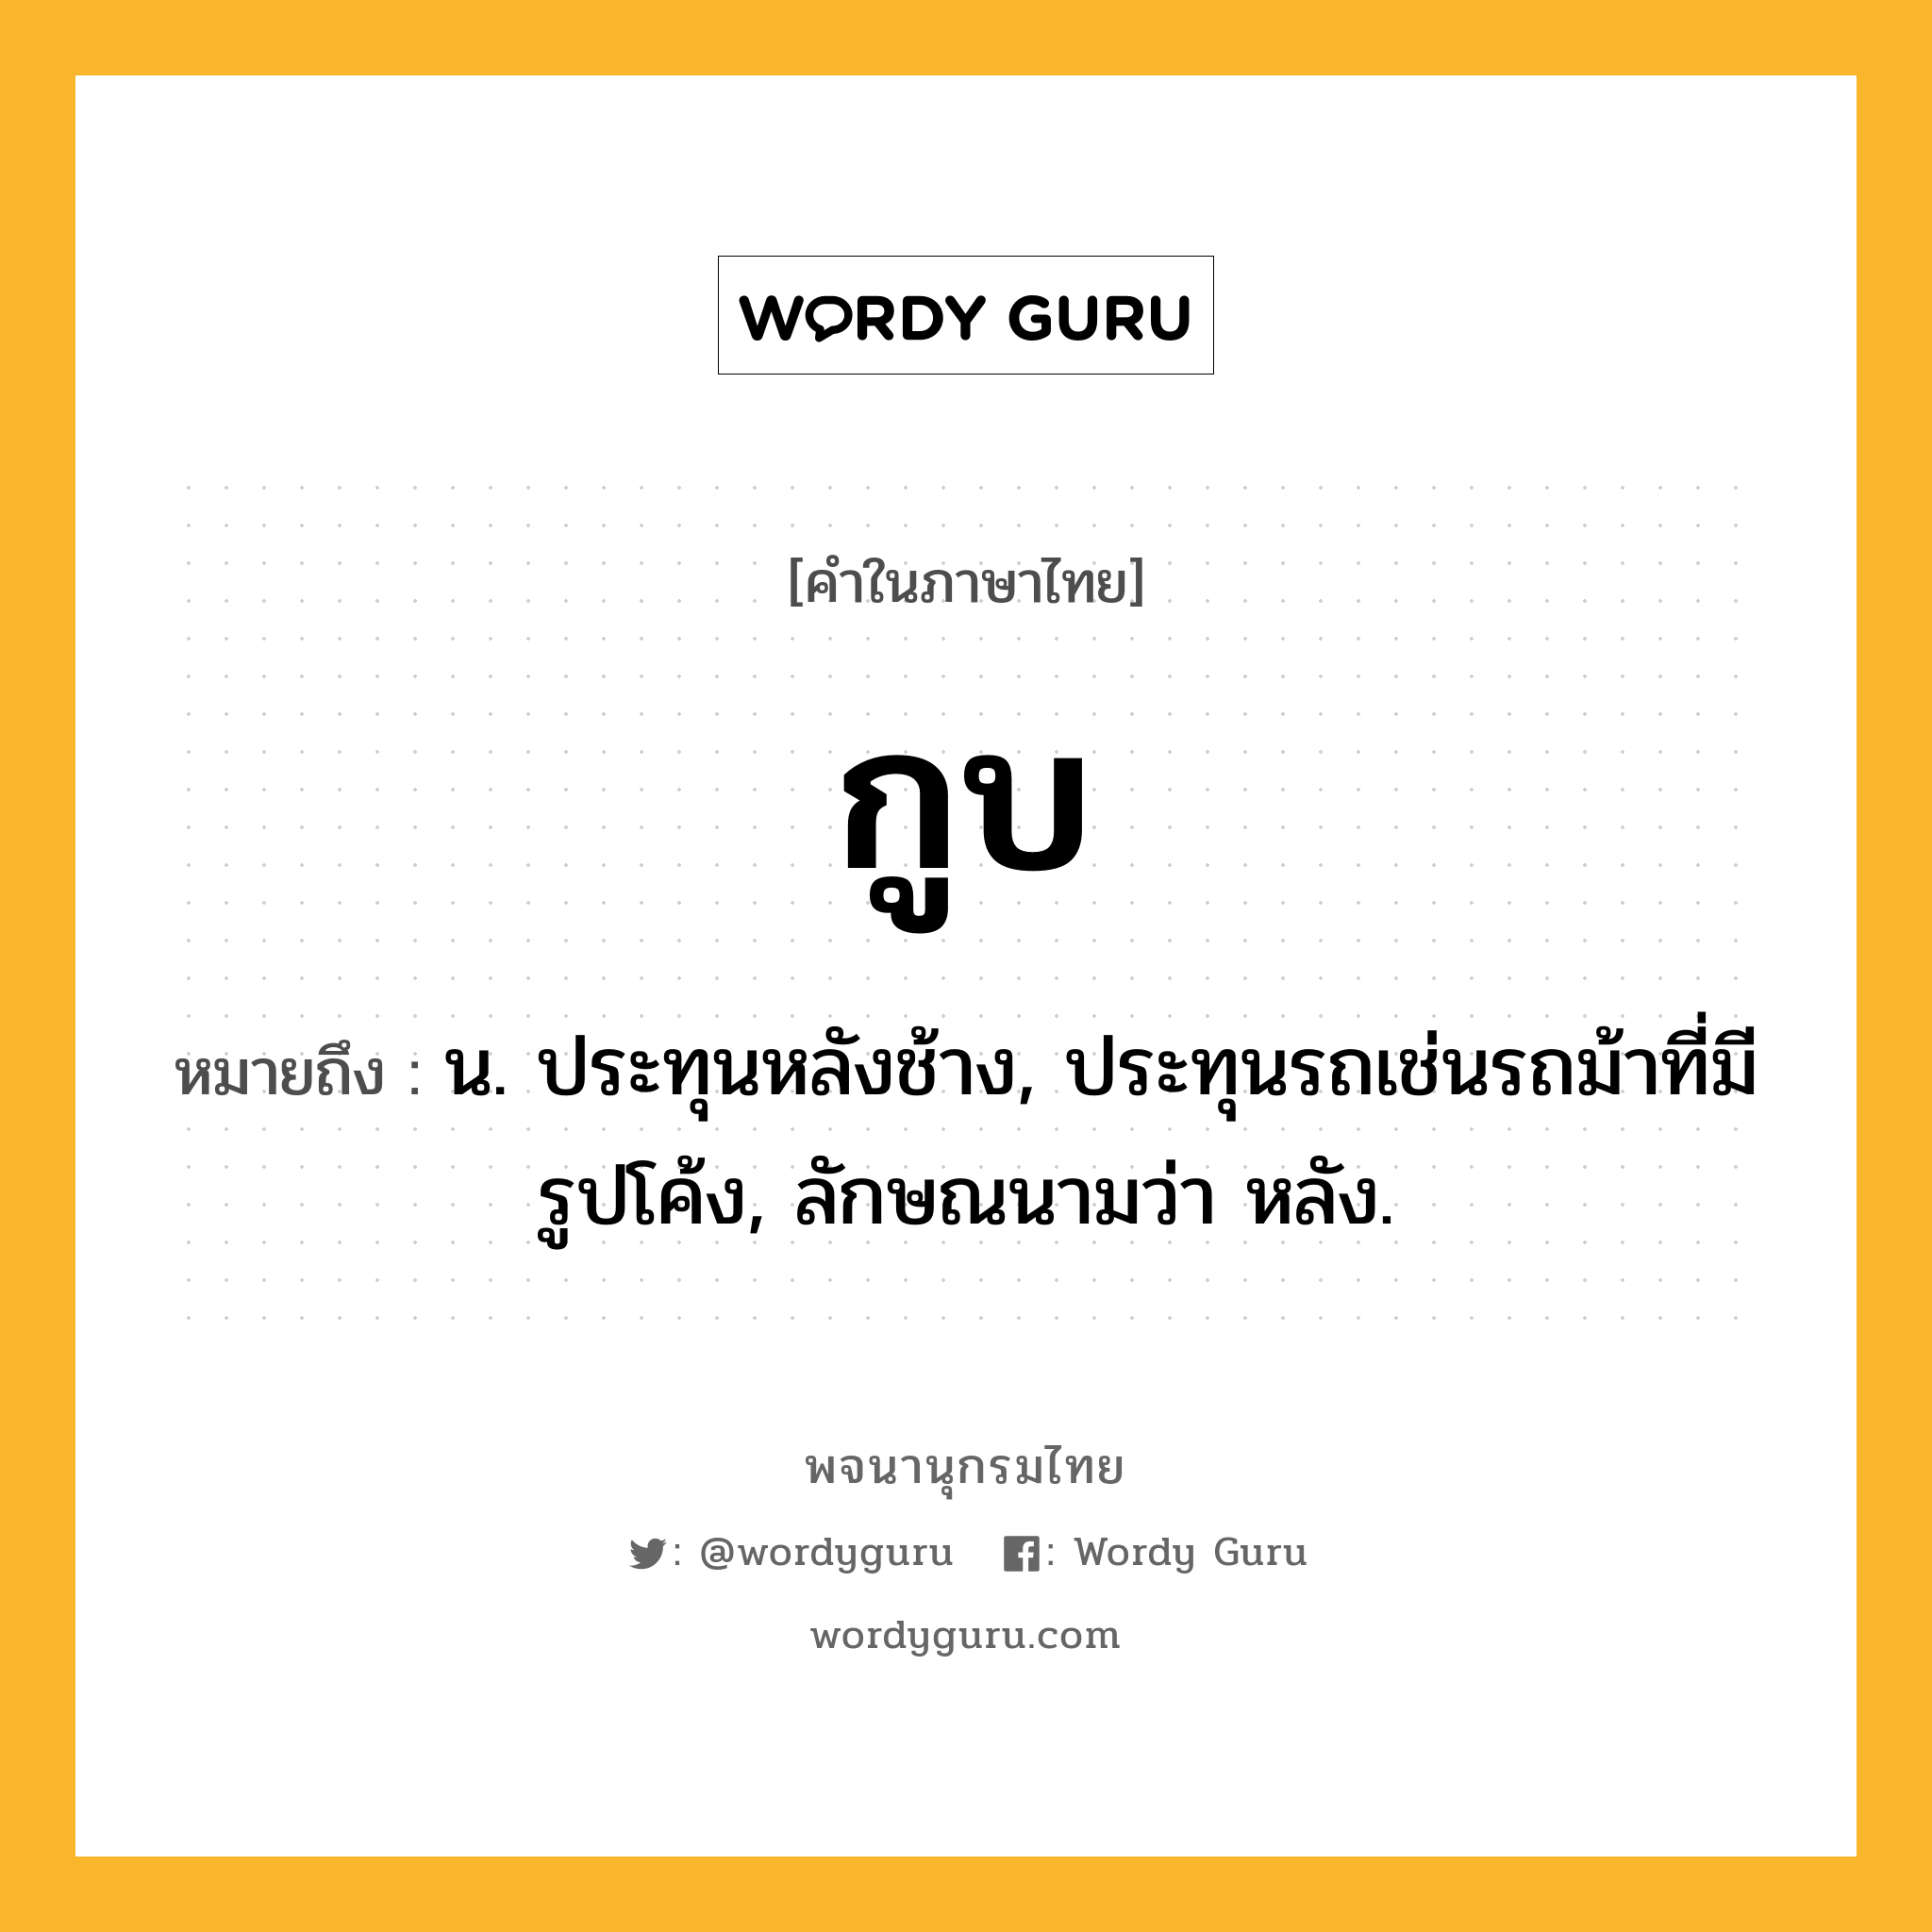 กูบ หมายถึงอะไร?, คำในภาษาไทย กูบ หมายถึง น. ประทุนหลังช้าง, ประทุนรถเช่นรถม้าที่มีรูปโค้ง, ลักษณนามว่า หลัง.